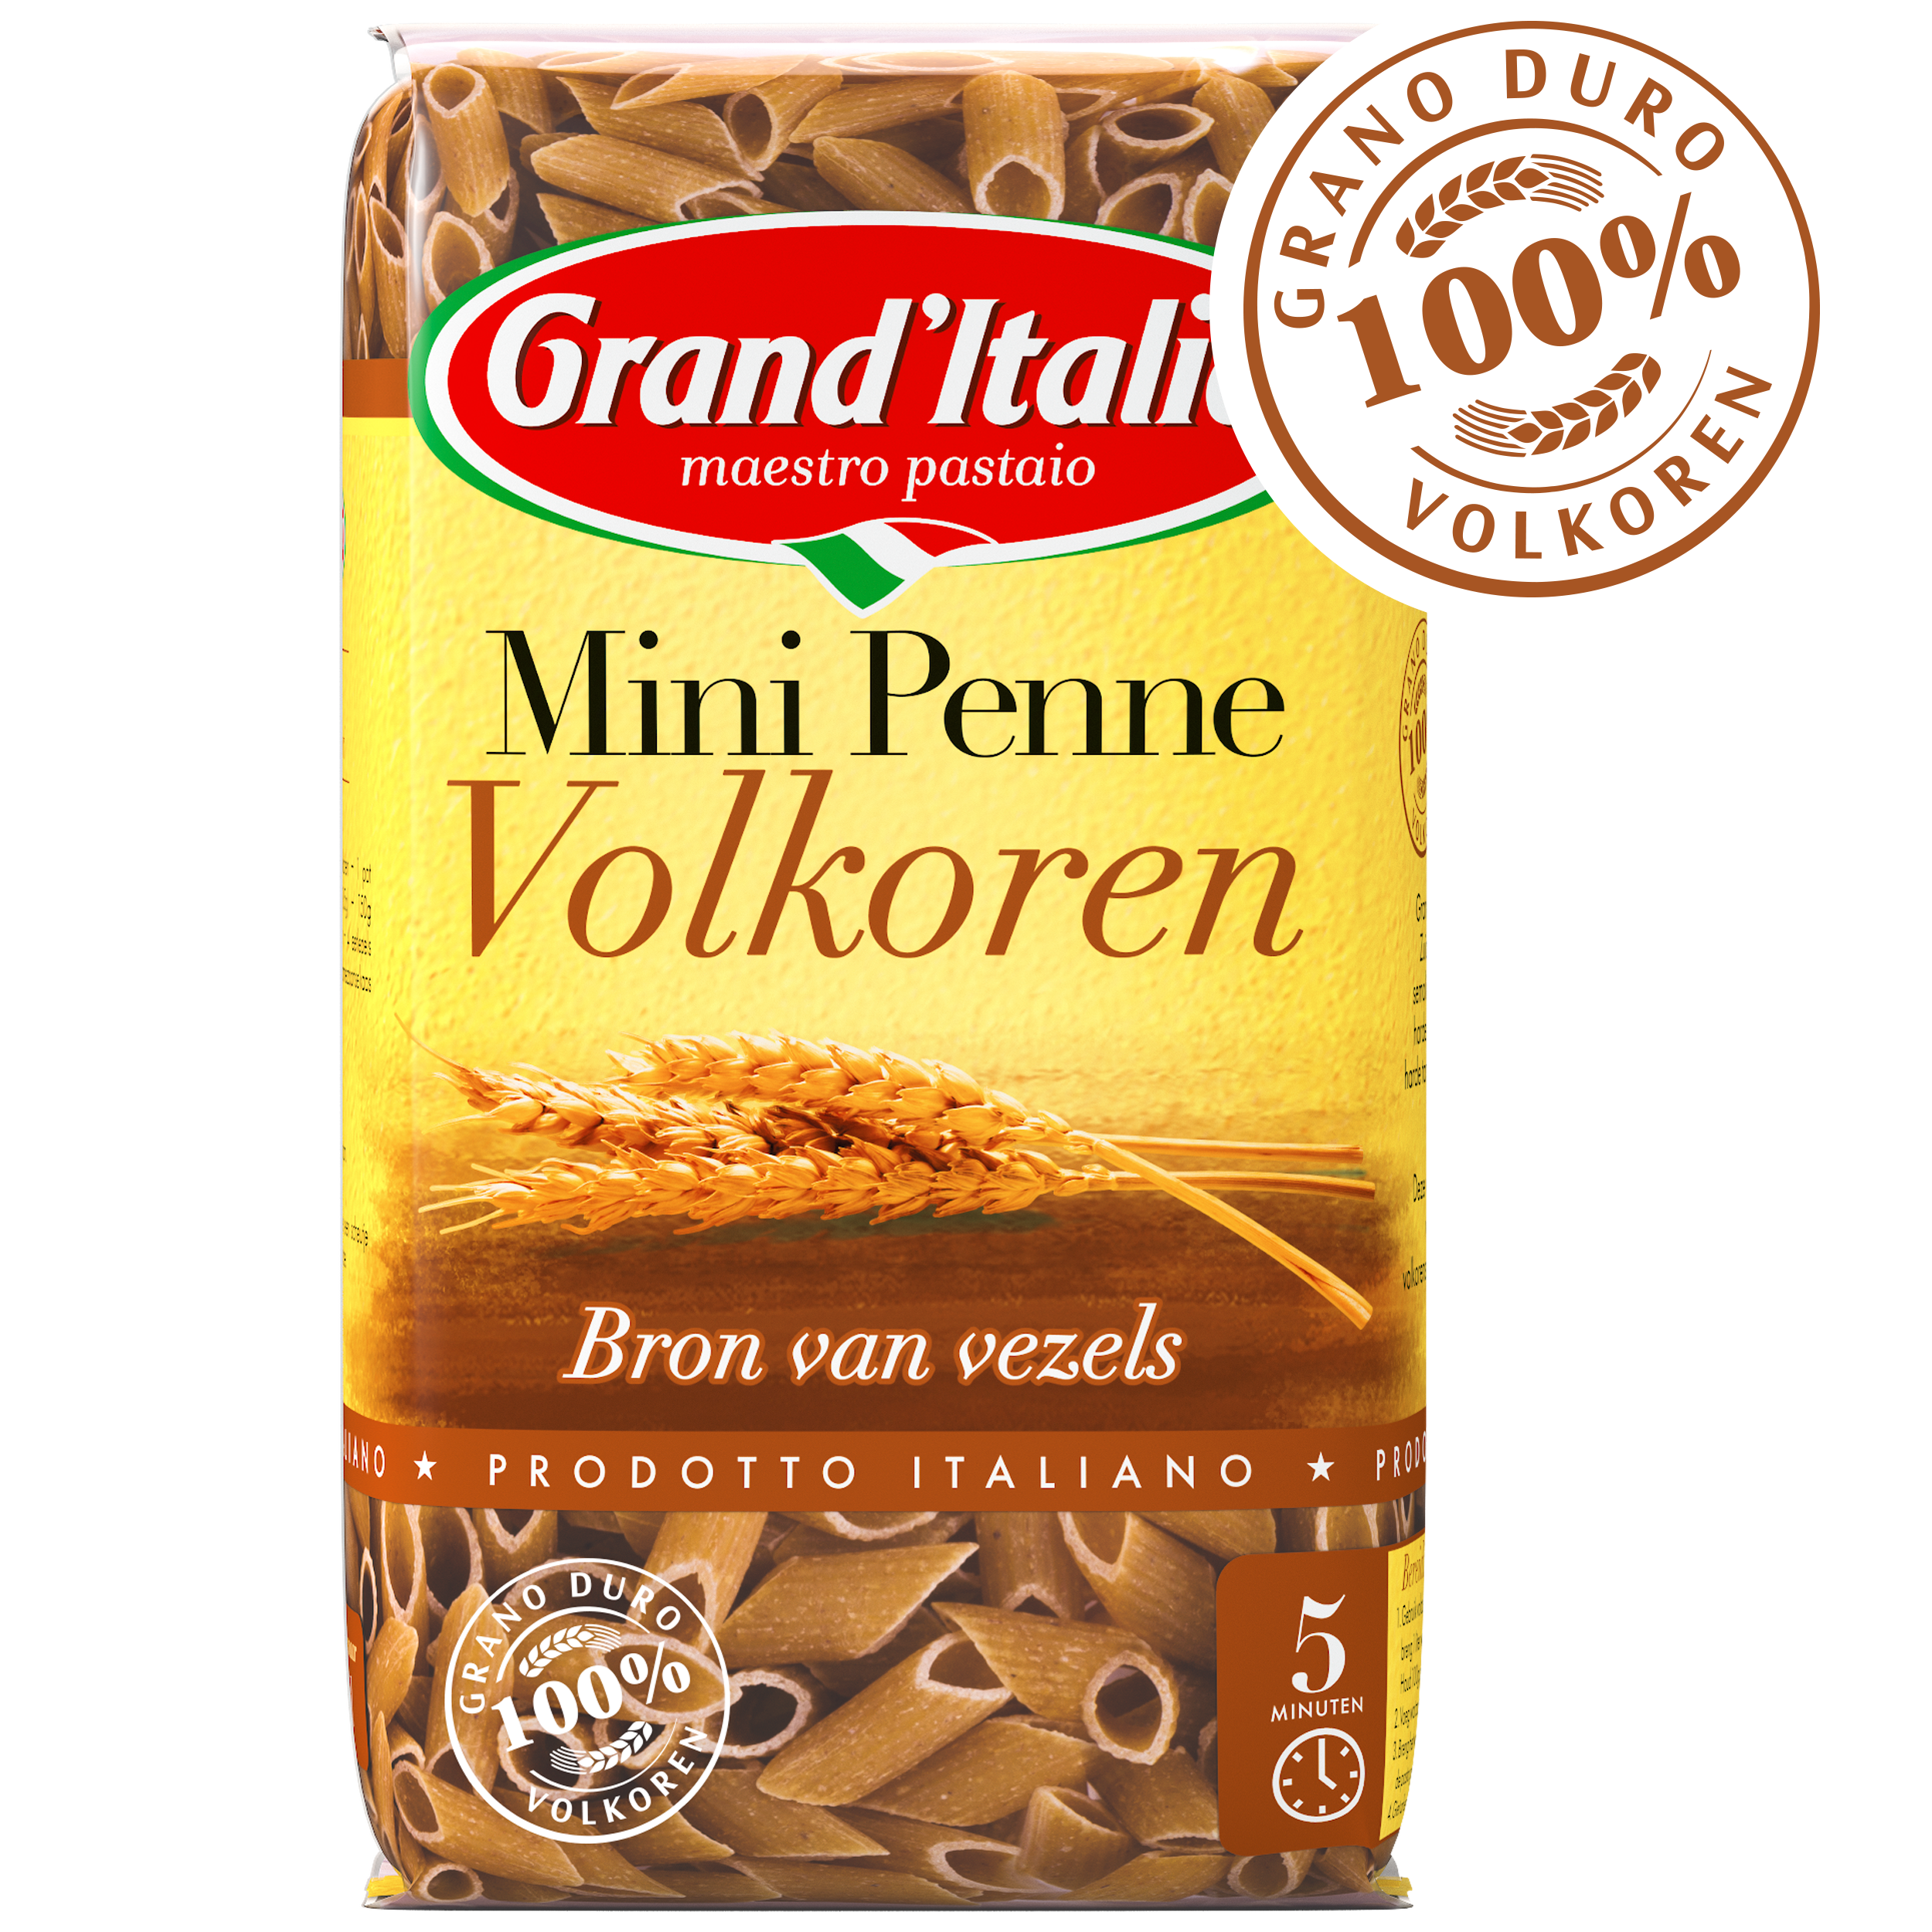 Pasta Mini Penne Volkoren 350g claim Grand'Italia